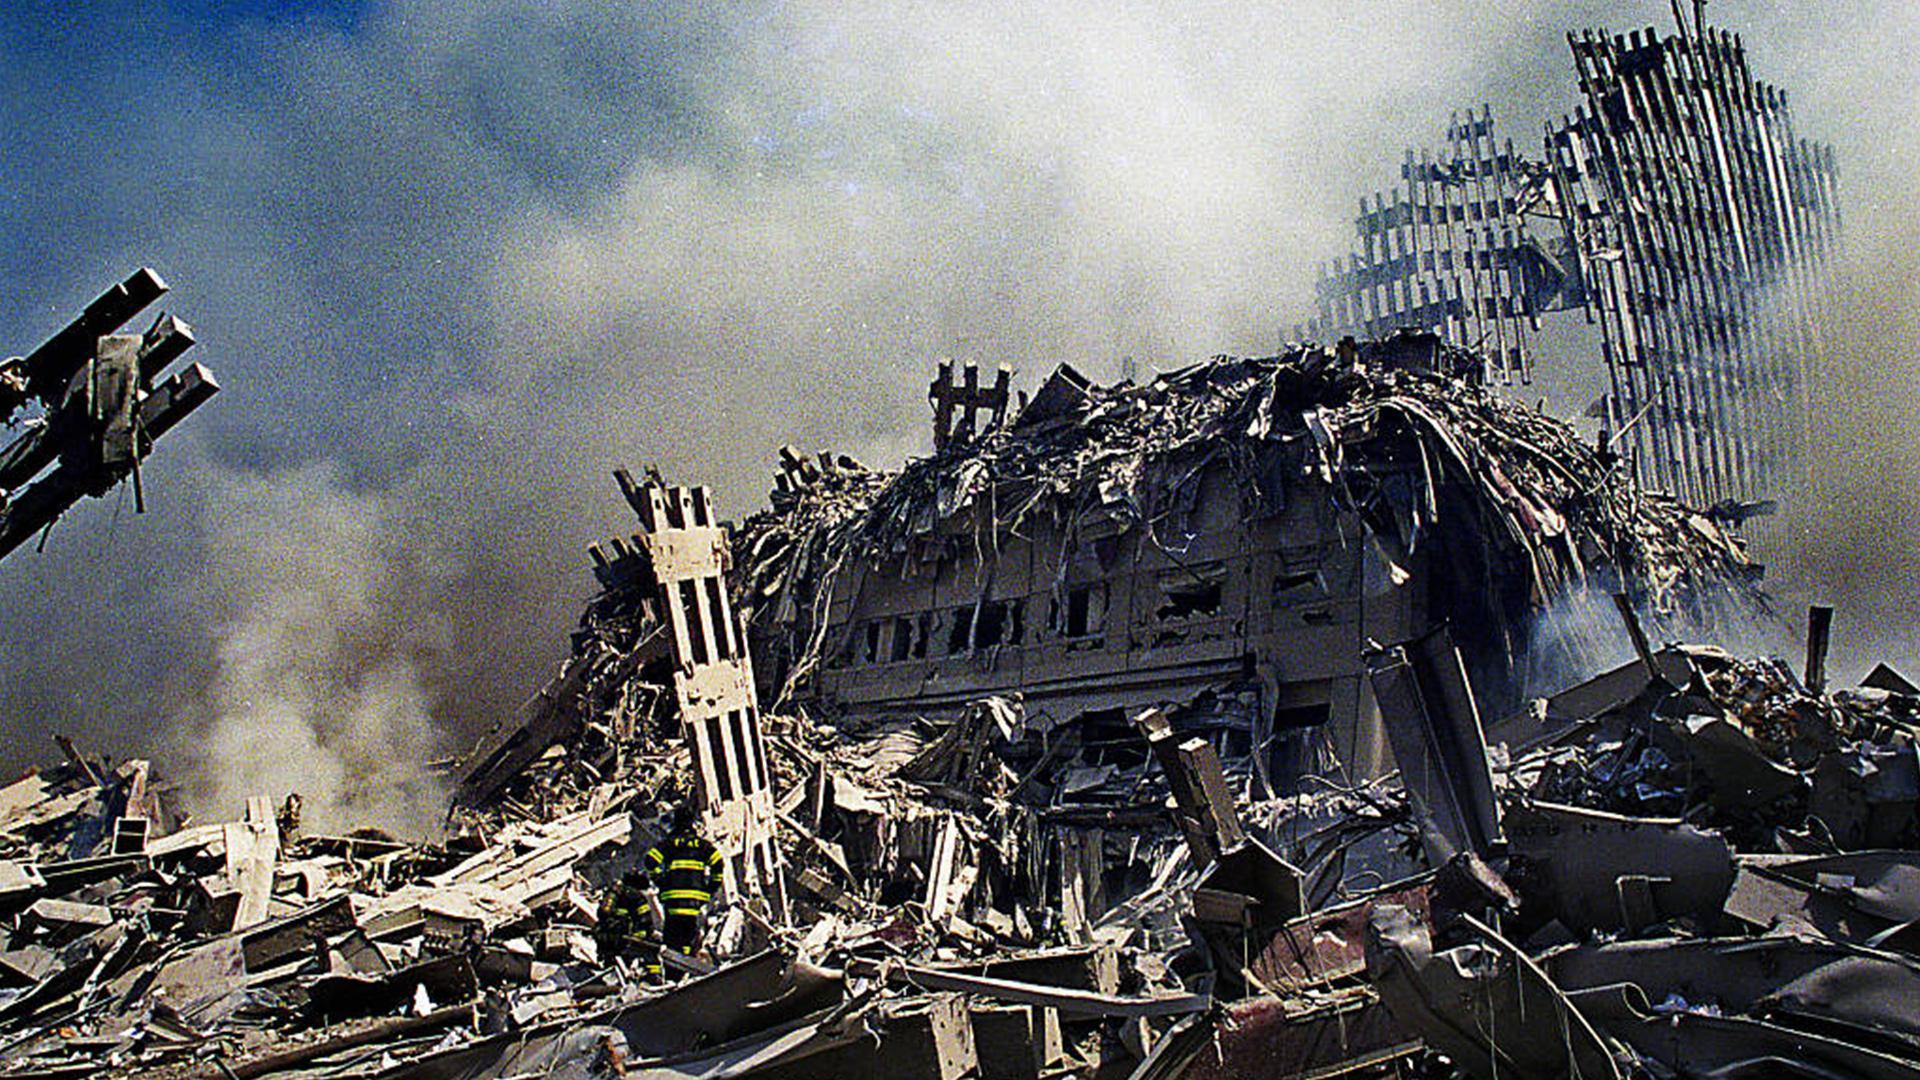 Теракты 11 сентября 2001 года сколько погибших. Шанксвилл 11 сентября. Катастрофа 2001 башни Близнецы. Теракты 11 сентября в США. 2996 Погибших.